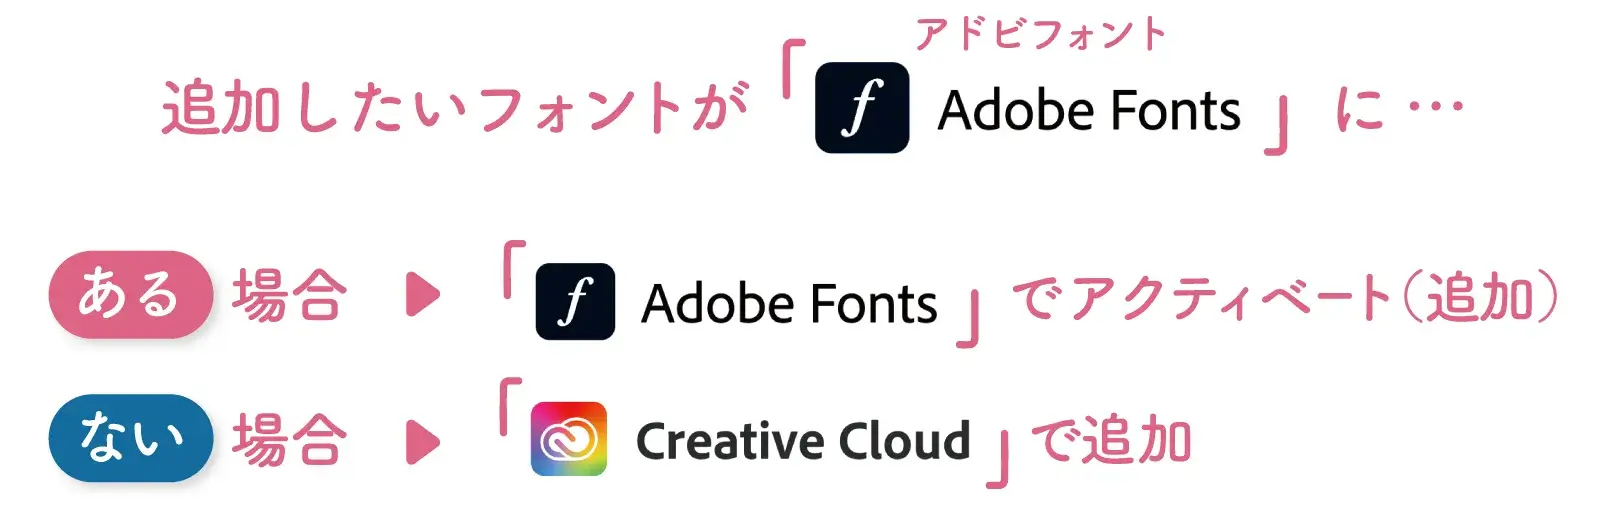 Adobe Fontsの追加方法は大きく分けて２パターンあることを説明した図